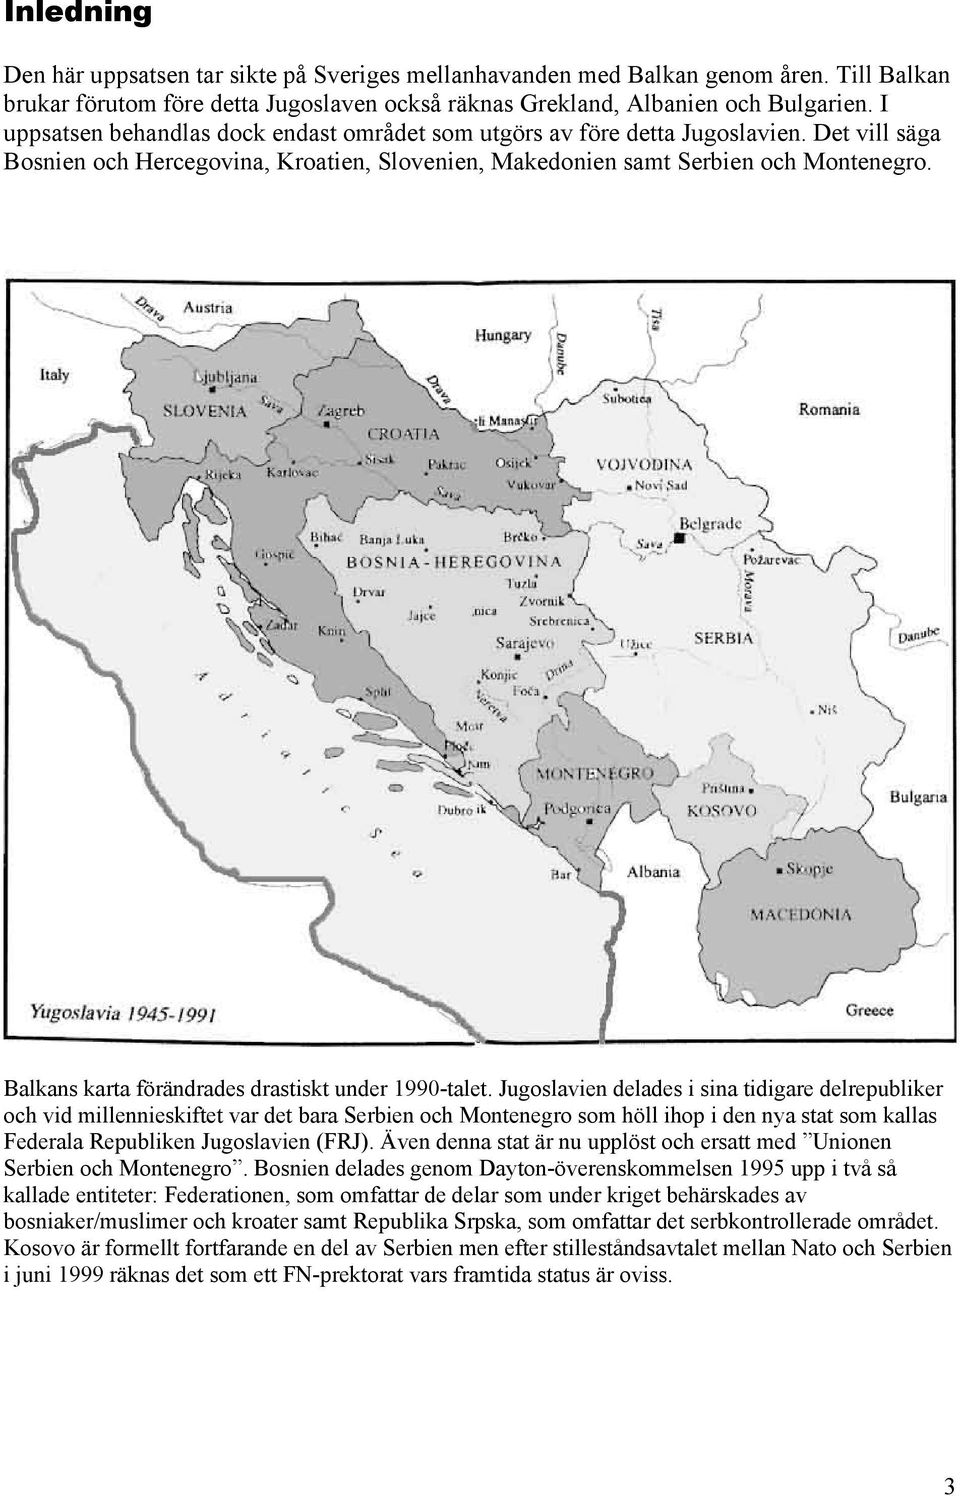 Balkans karta förändrades drastiskt under 1990-talet.